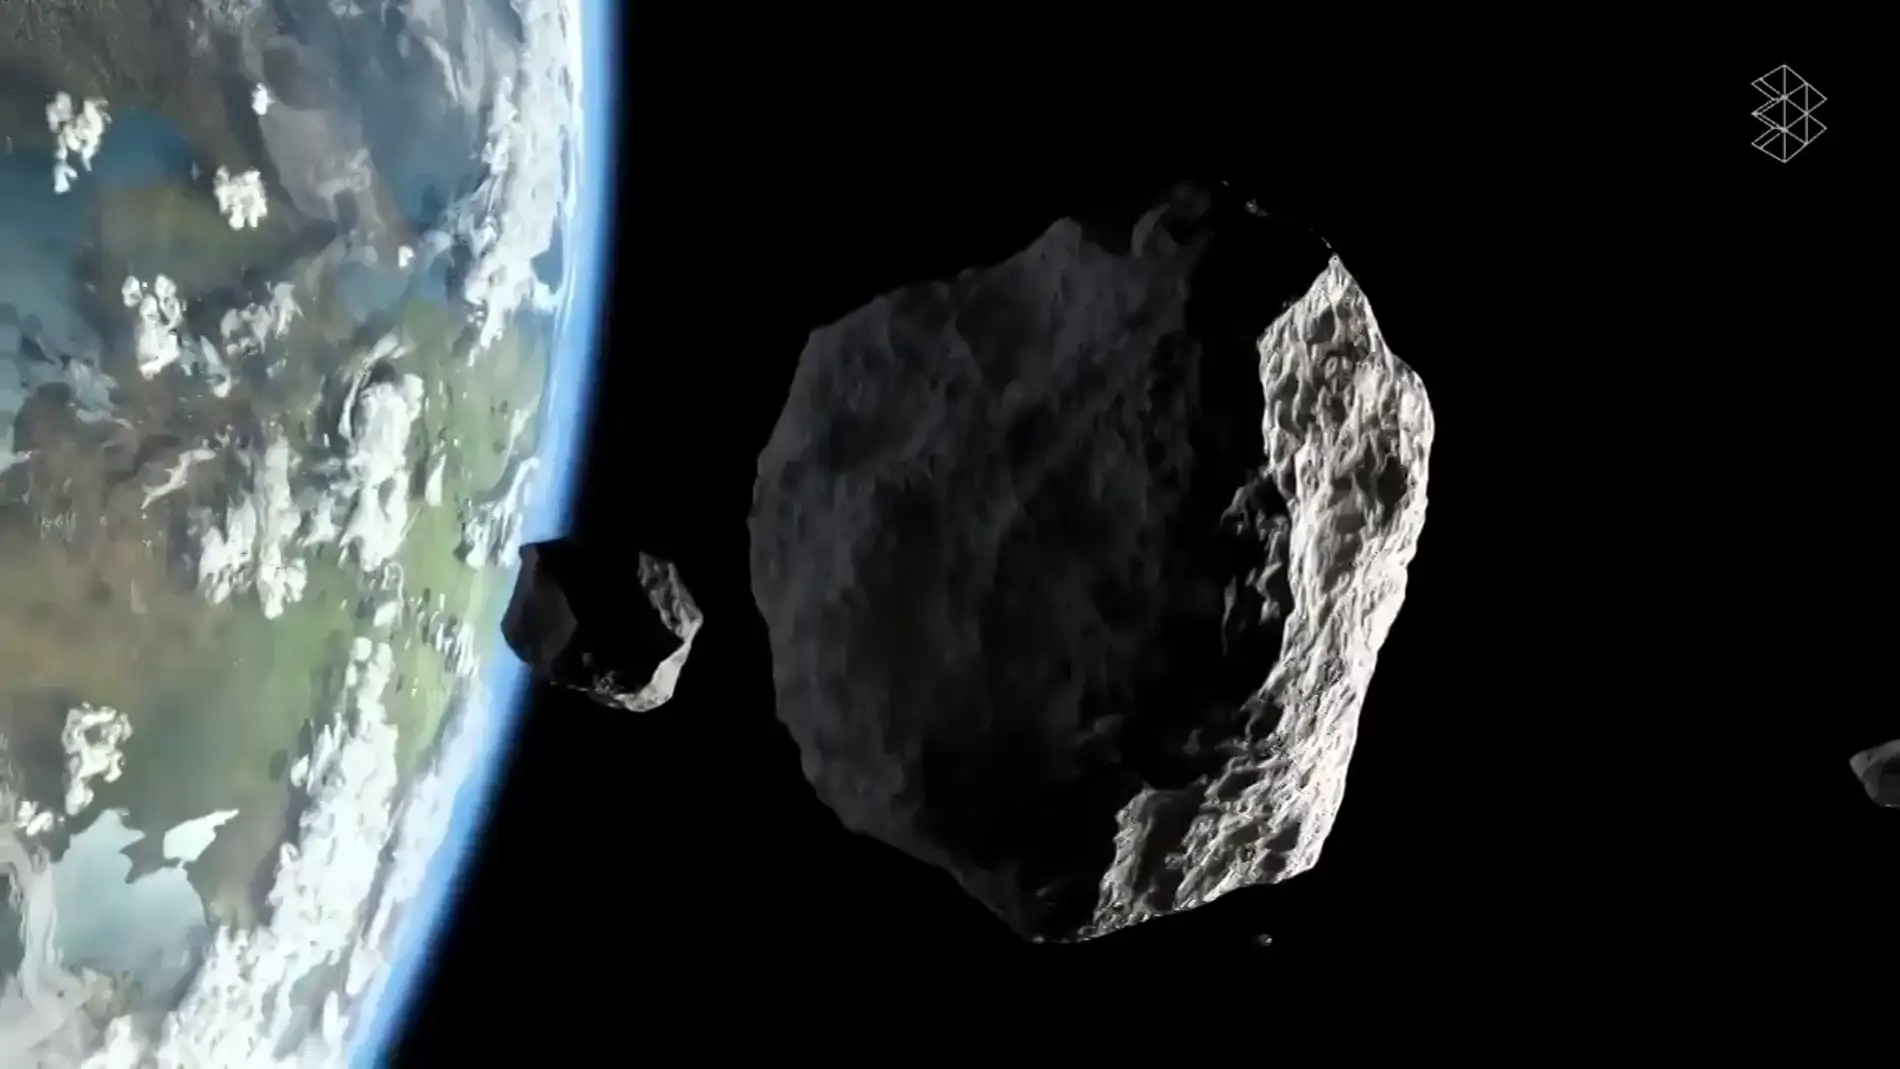 Un asteroide "potencialmente peligroso"